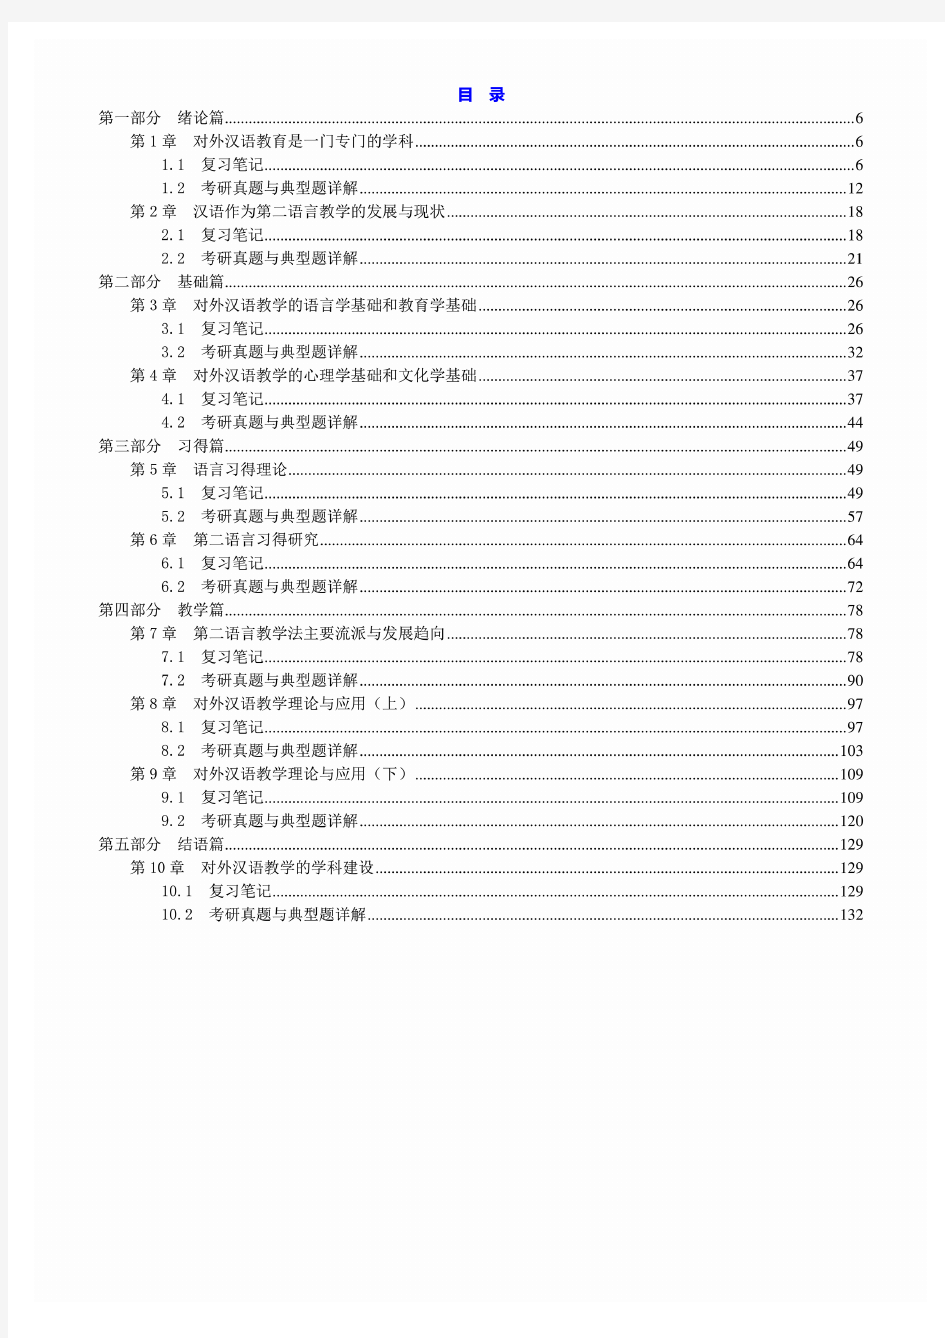 刘珣《对外汉语教育学引论》笔记和真题详解